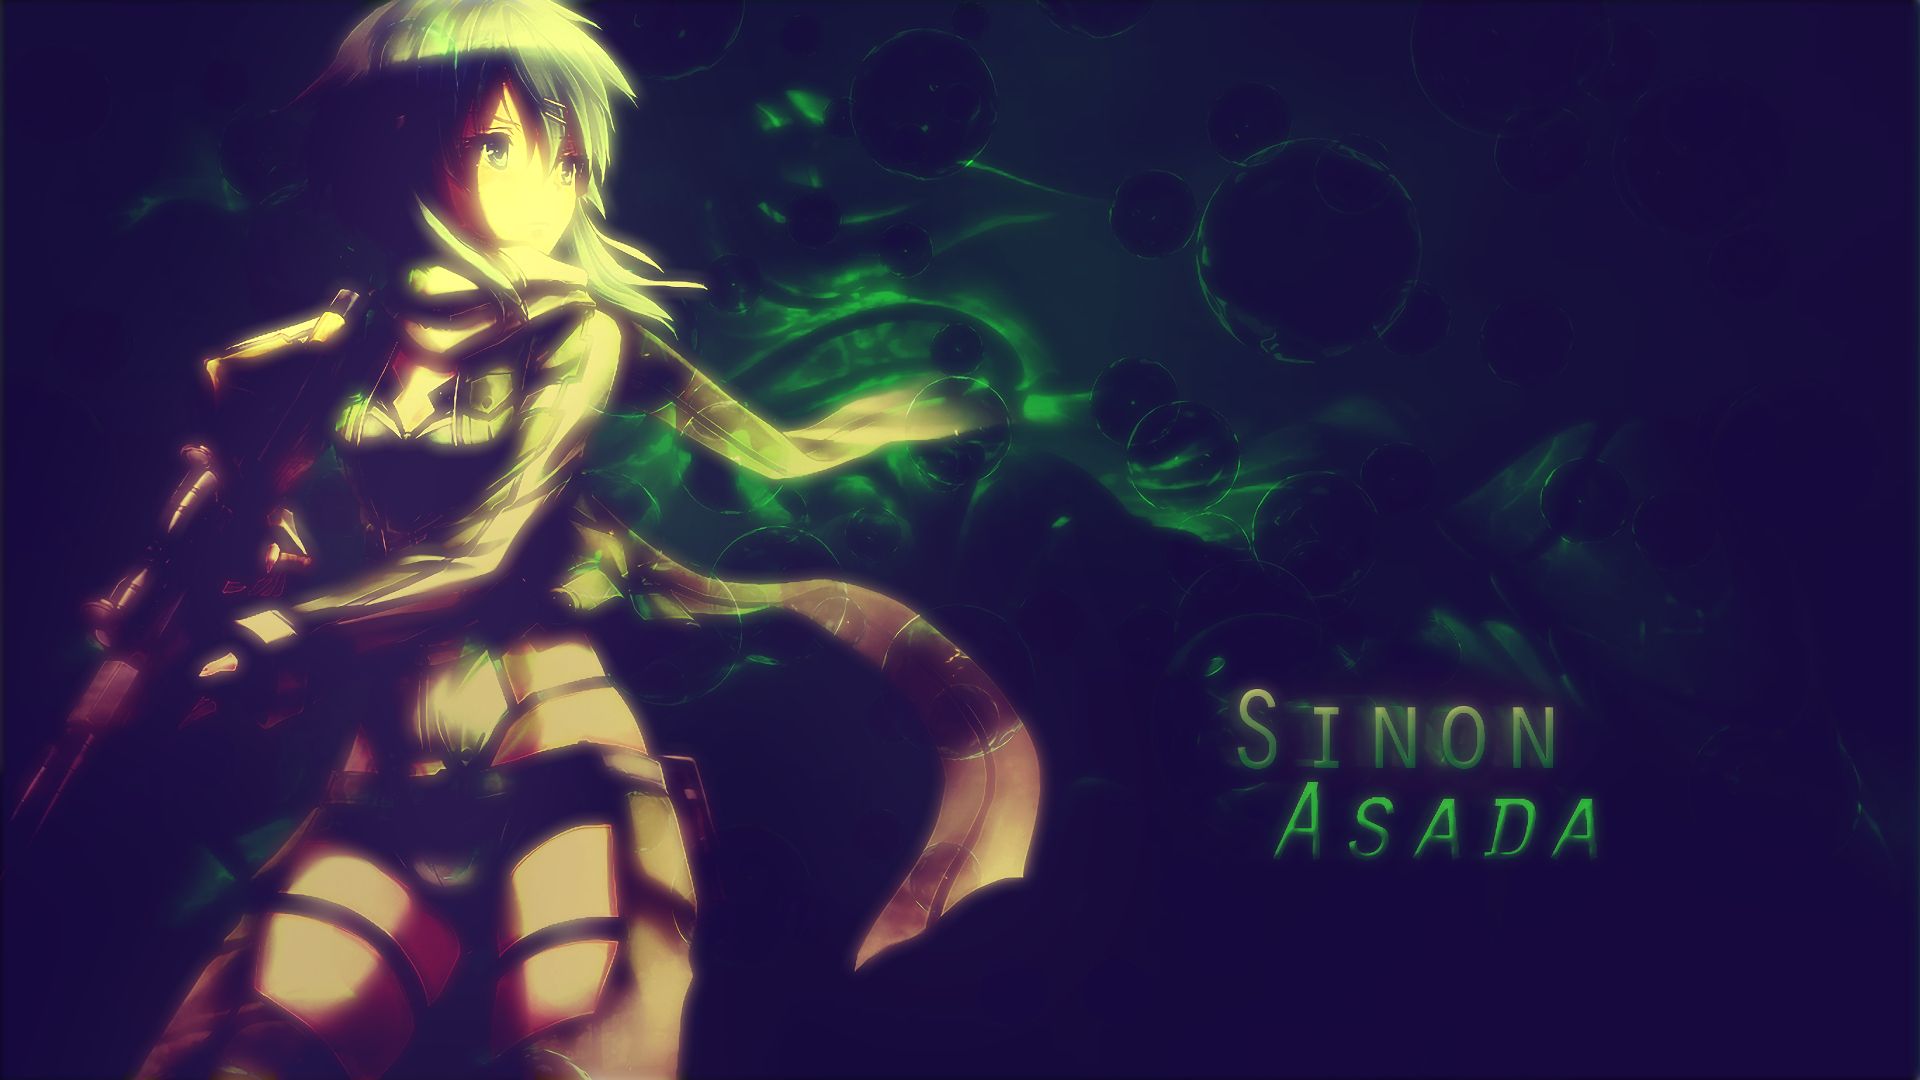 Descarga gratuita de fondo de pantalla para móvil de Sword Art Online, Animado, Espada Arte En Línea Ii, Sinon (Arte De Espada En Línea), Shino Asada.